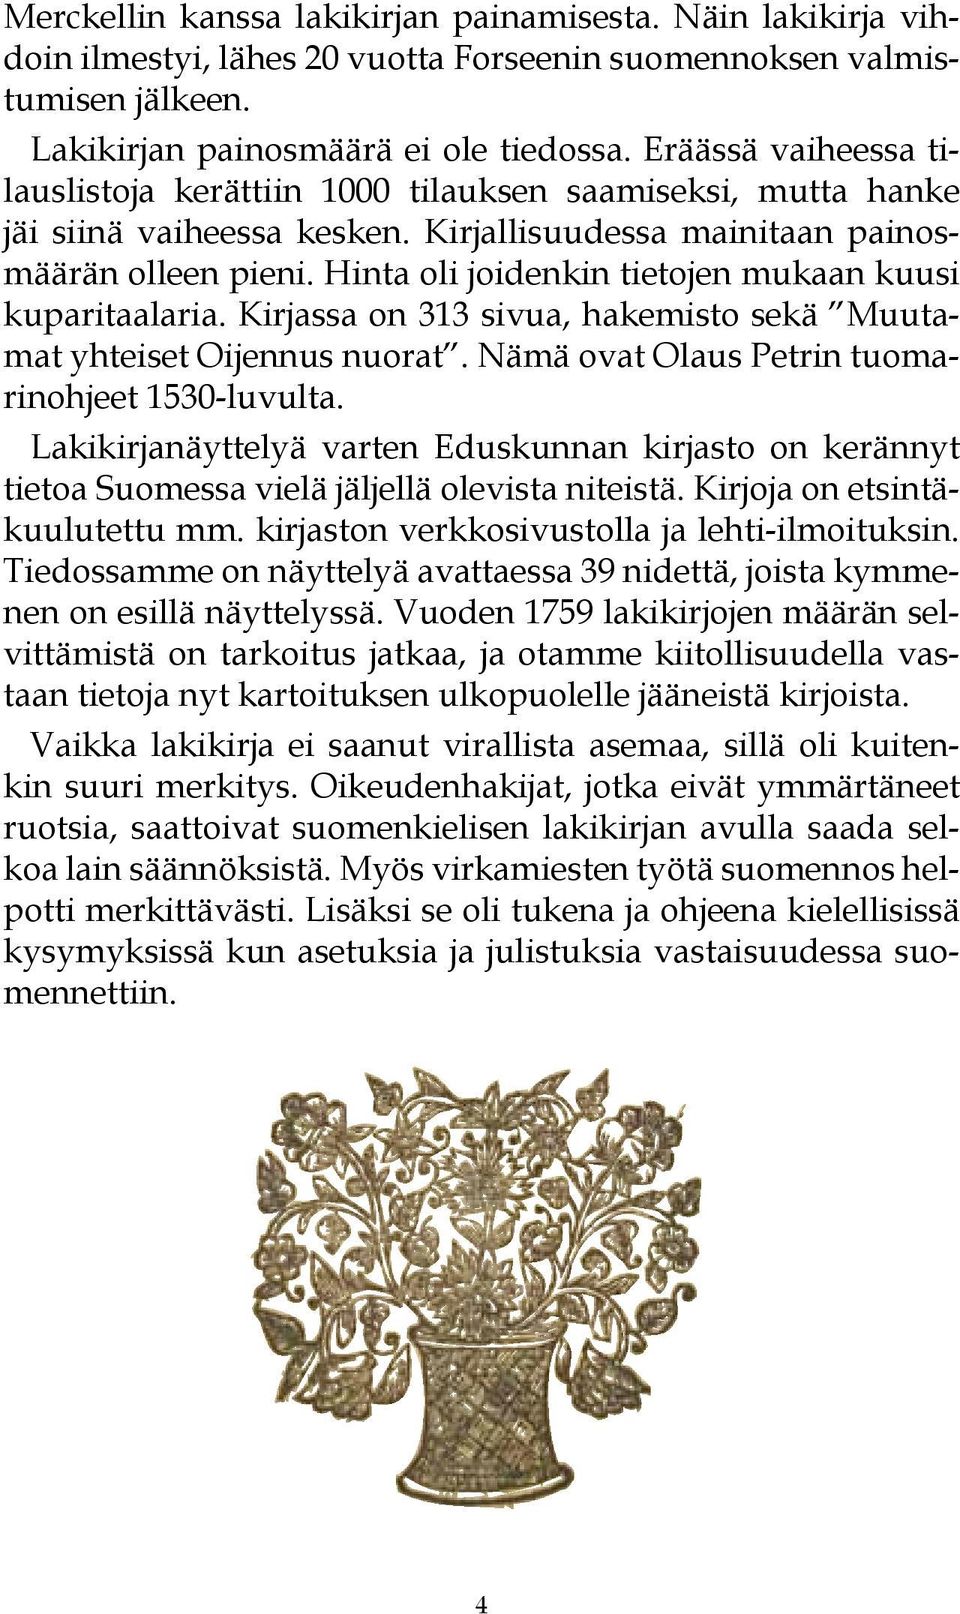 Hinta oli joidenkin tietojen mukaan kuusi kuparitaalaria. Kirjassa on 313 sivua, hakemisto sekä Muutamat yhteiset Oijennus nuorat. Nämä ovat Olaus Petrin tuomarinohjeet 1530-luvulta.